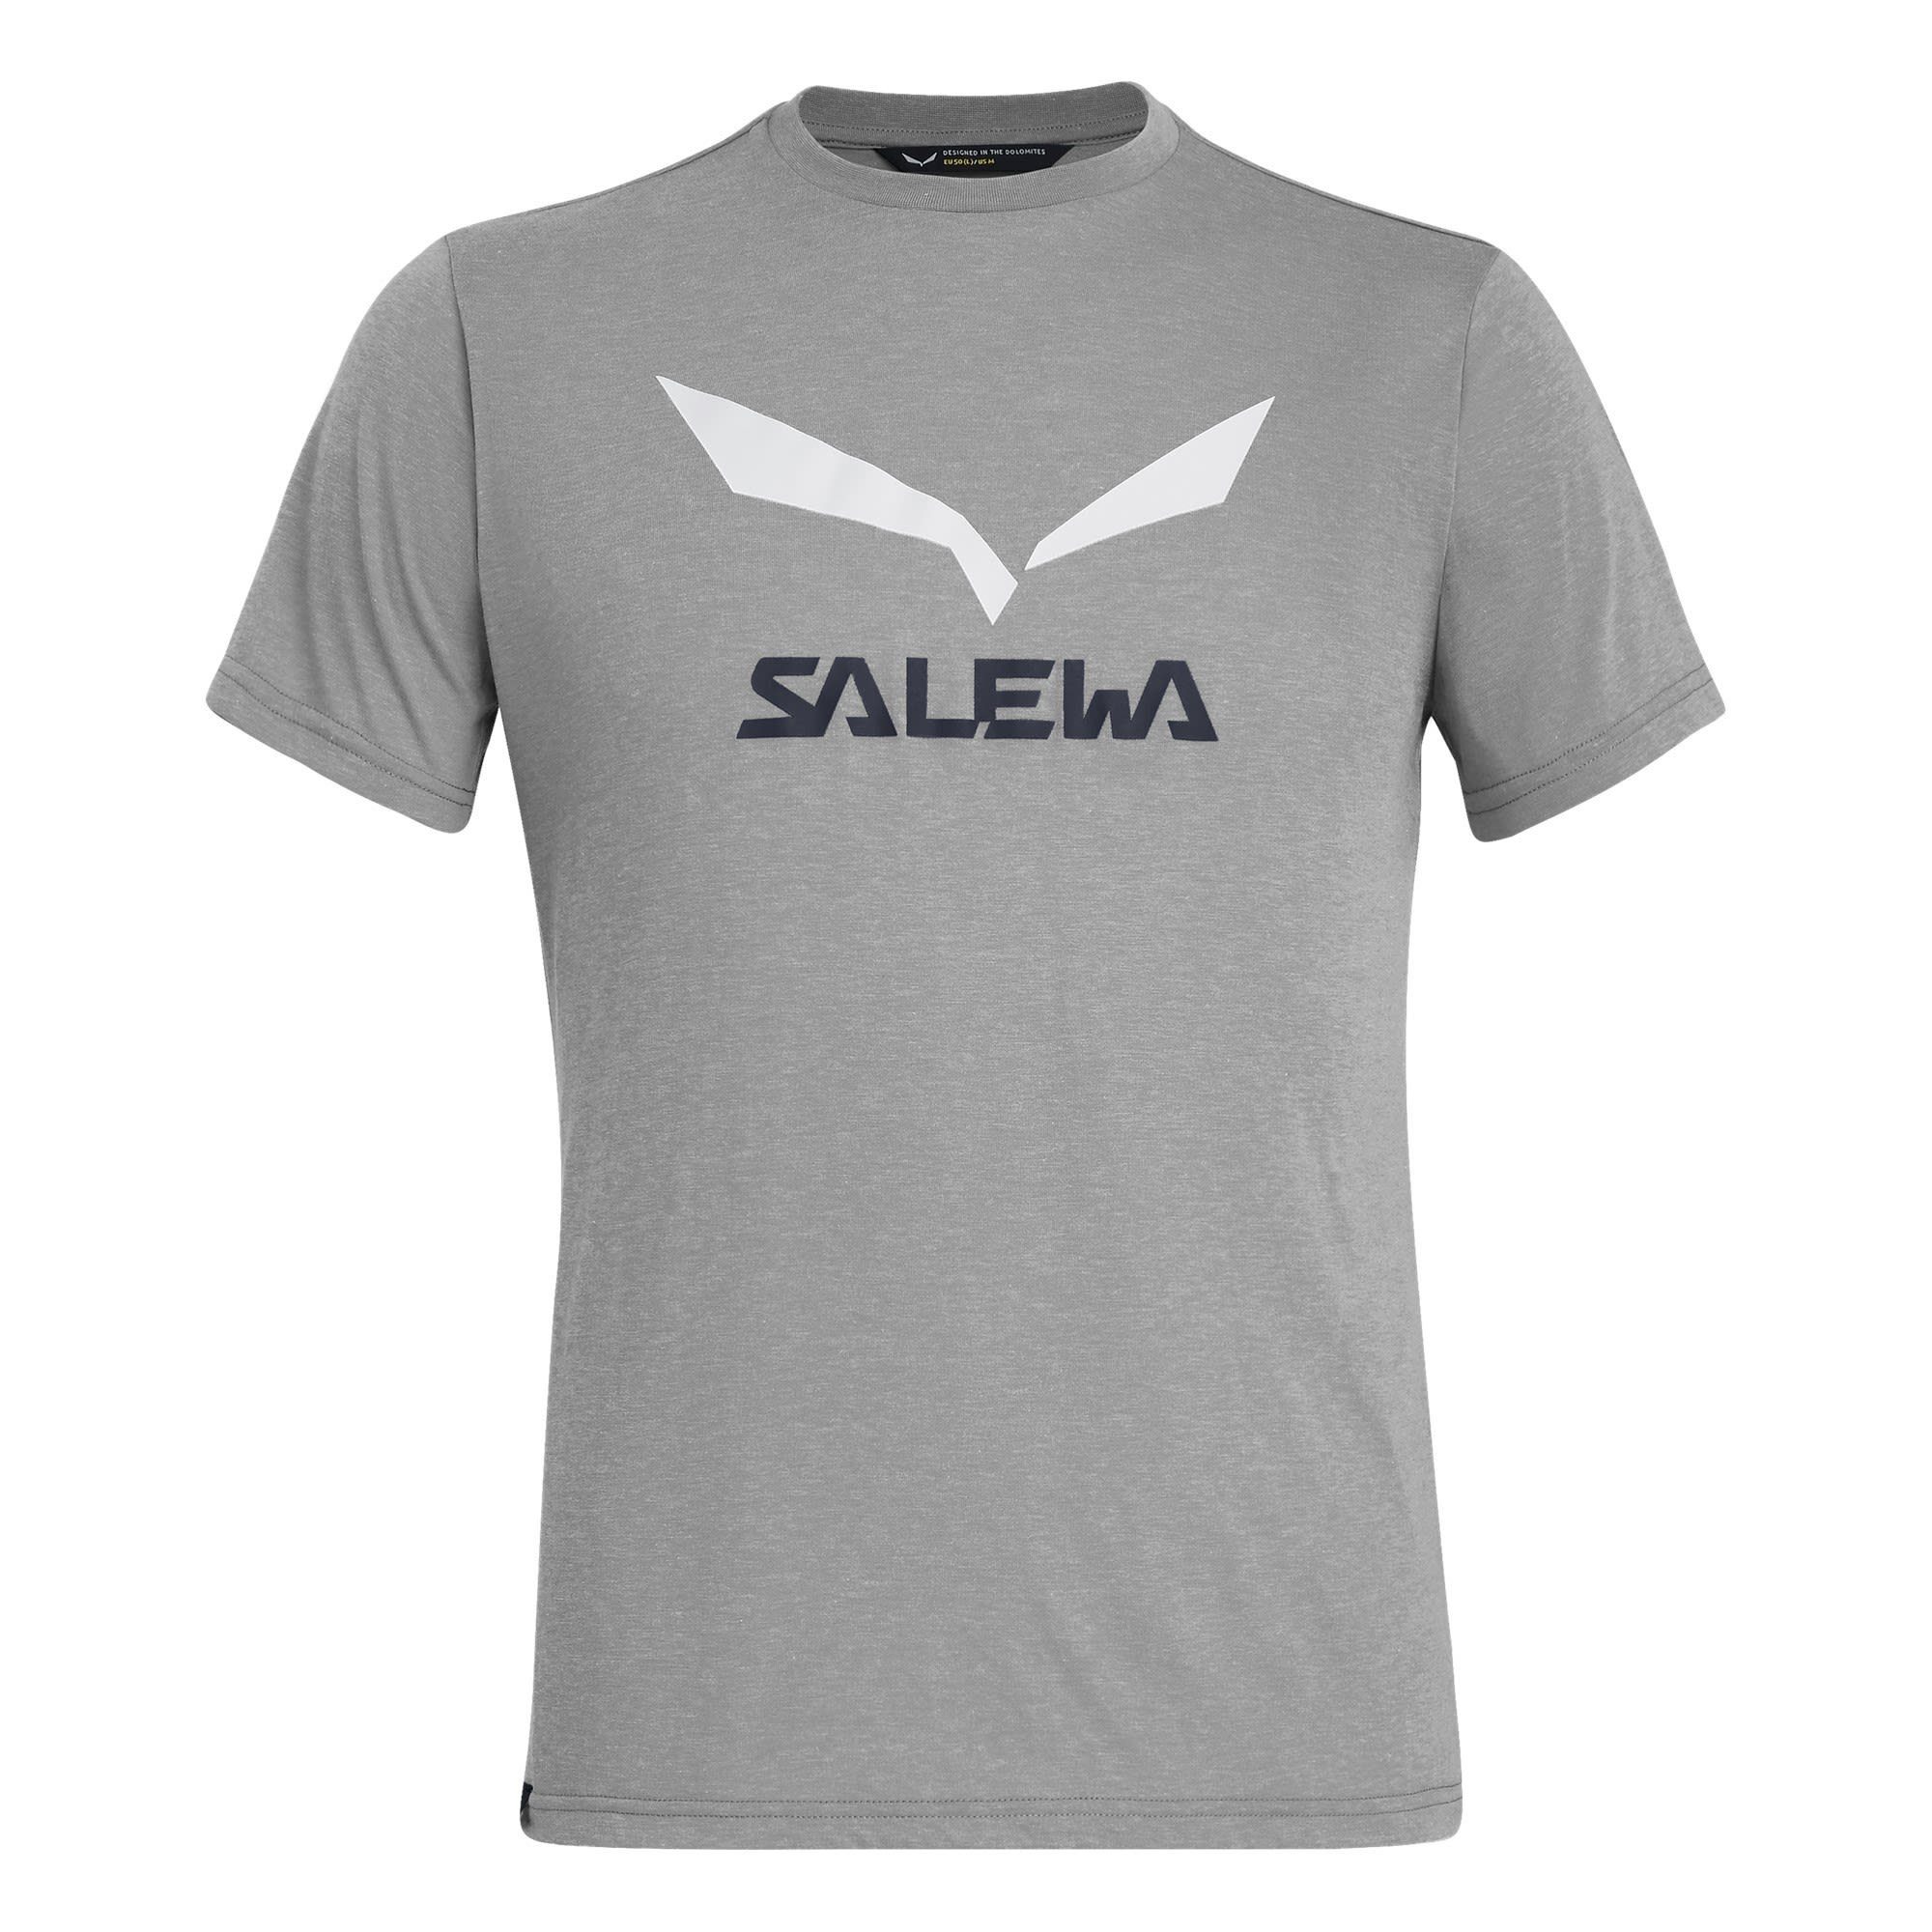 Salewa T-Shirt Solidlogo Tee Dri M Herren Salewa Heather Grey Melange Release